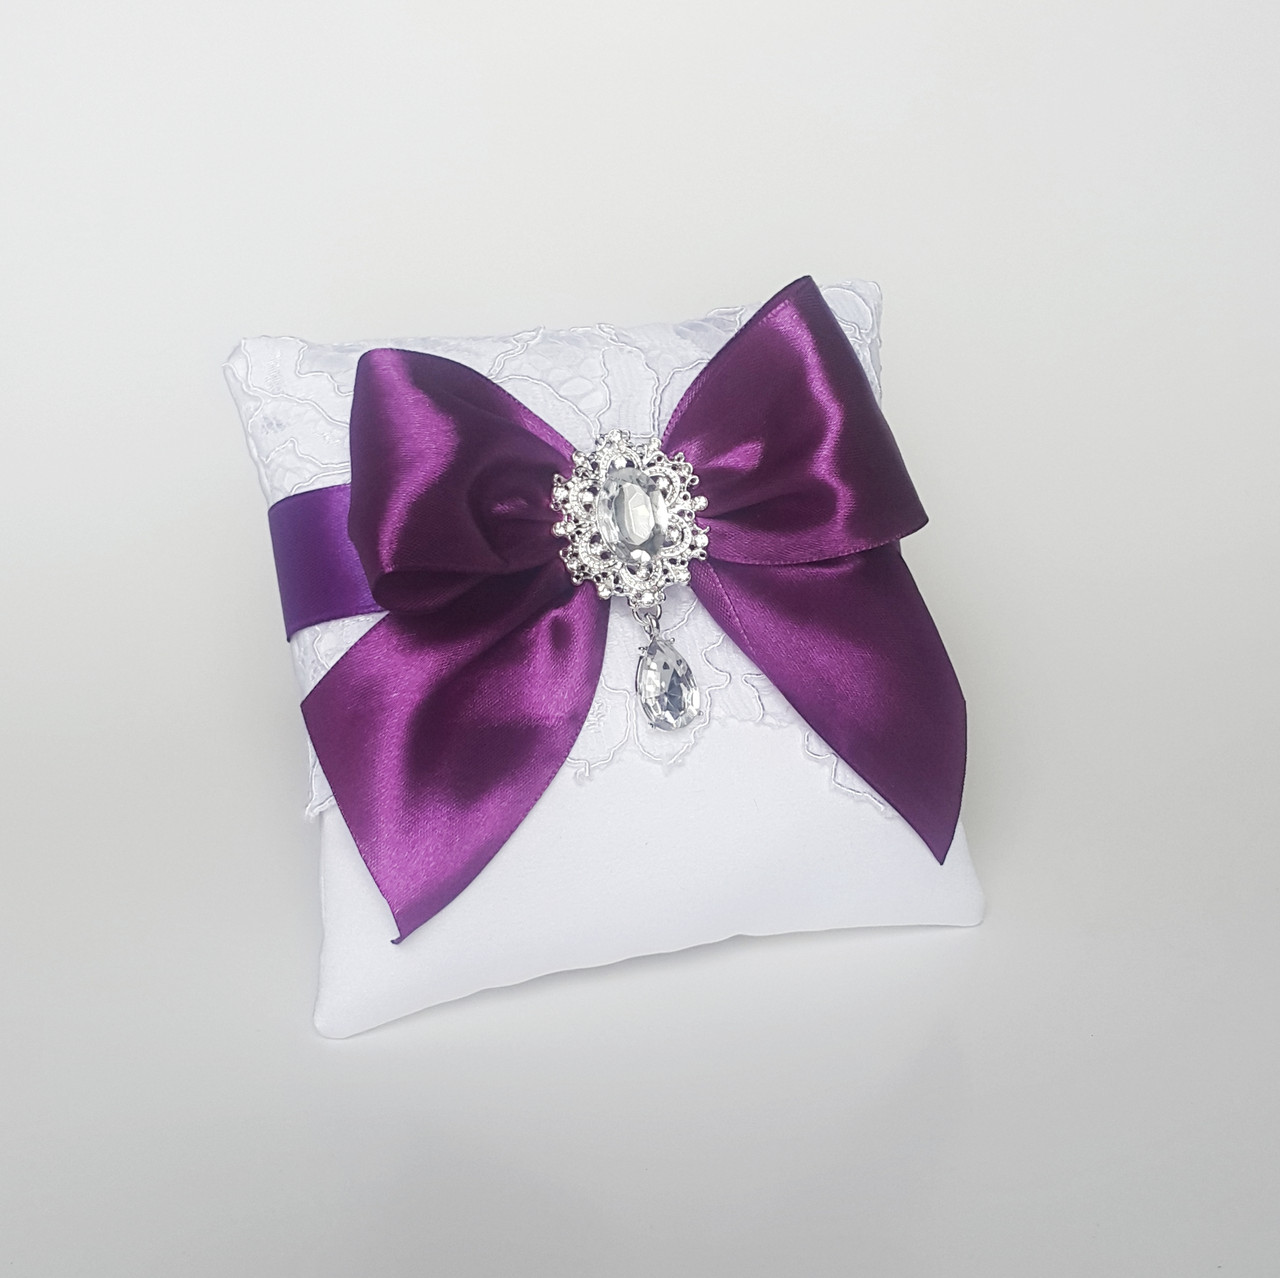 Подушечка для колец  "PERFECT" в фиолетовом цвете с кружевом и брошью